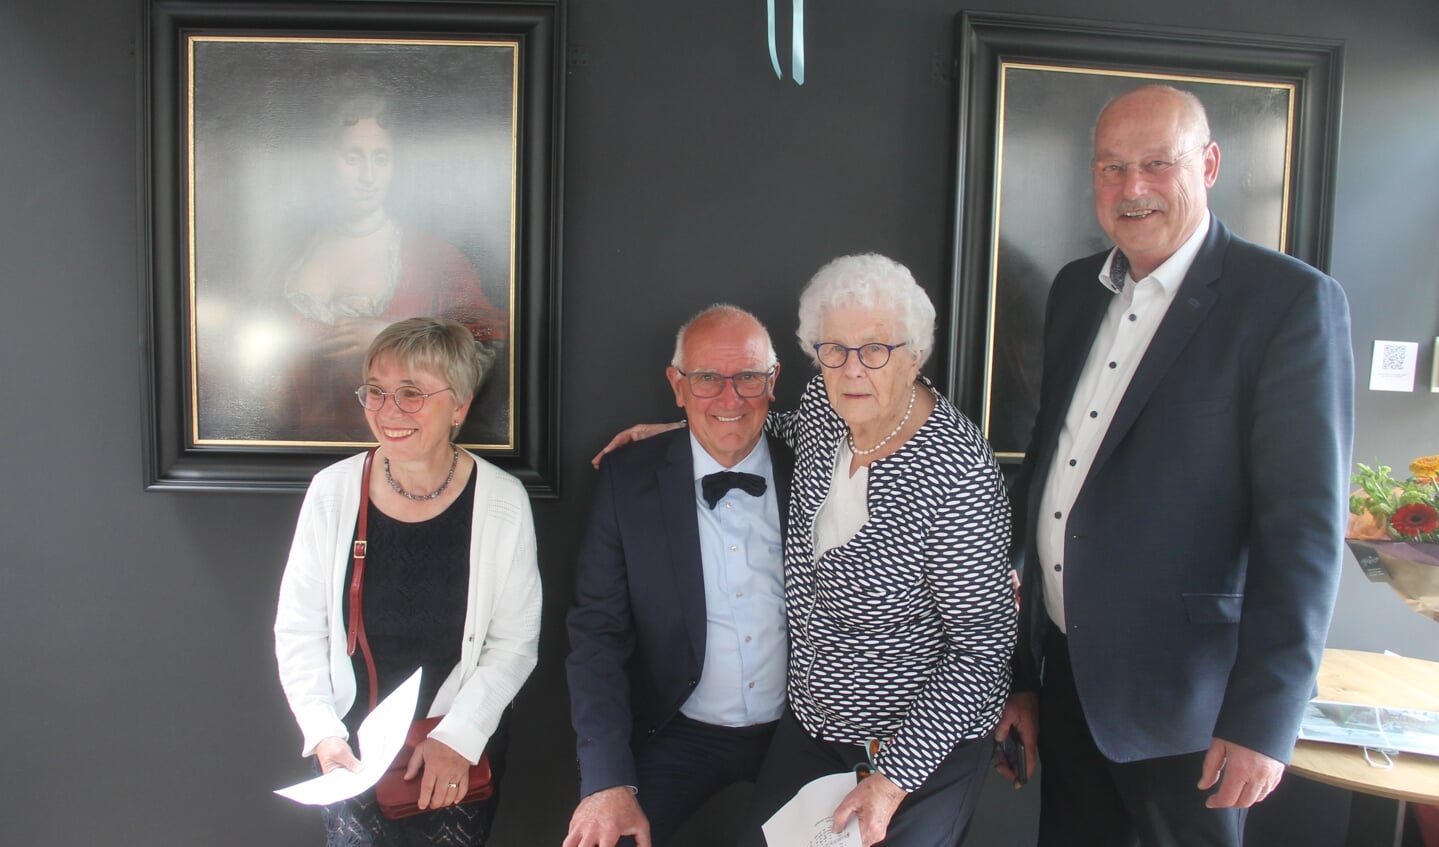 Links locoburgemeester van Bocholt Gudrun Koppers, Henk Heijnen, Pie van Lochem en wethouder Martin Veldhuizen. Foto: Lineke Voltman